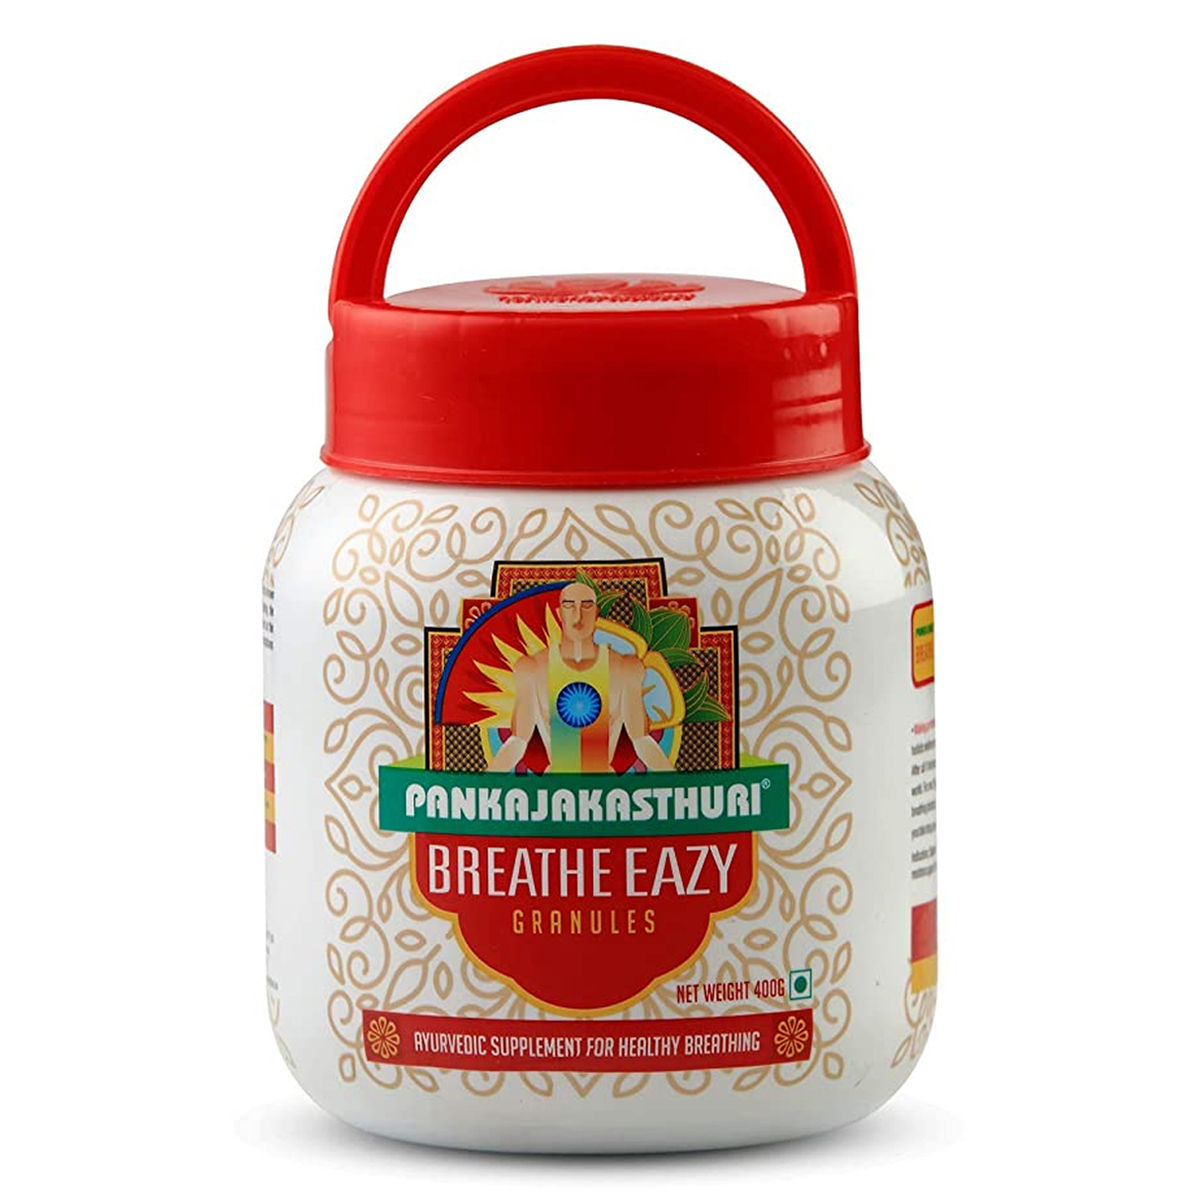 Buy Pankajakasthuri Breathe Easy Granules, 400 gm Online